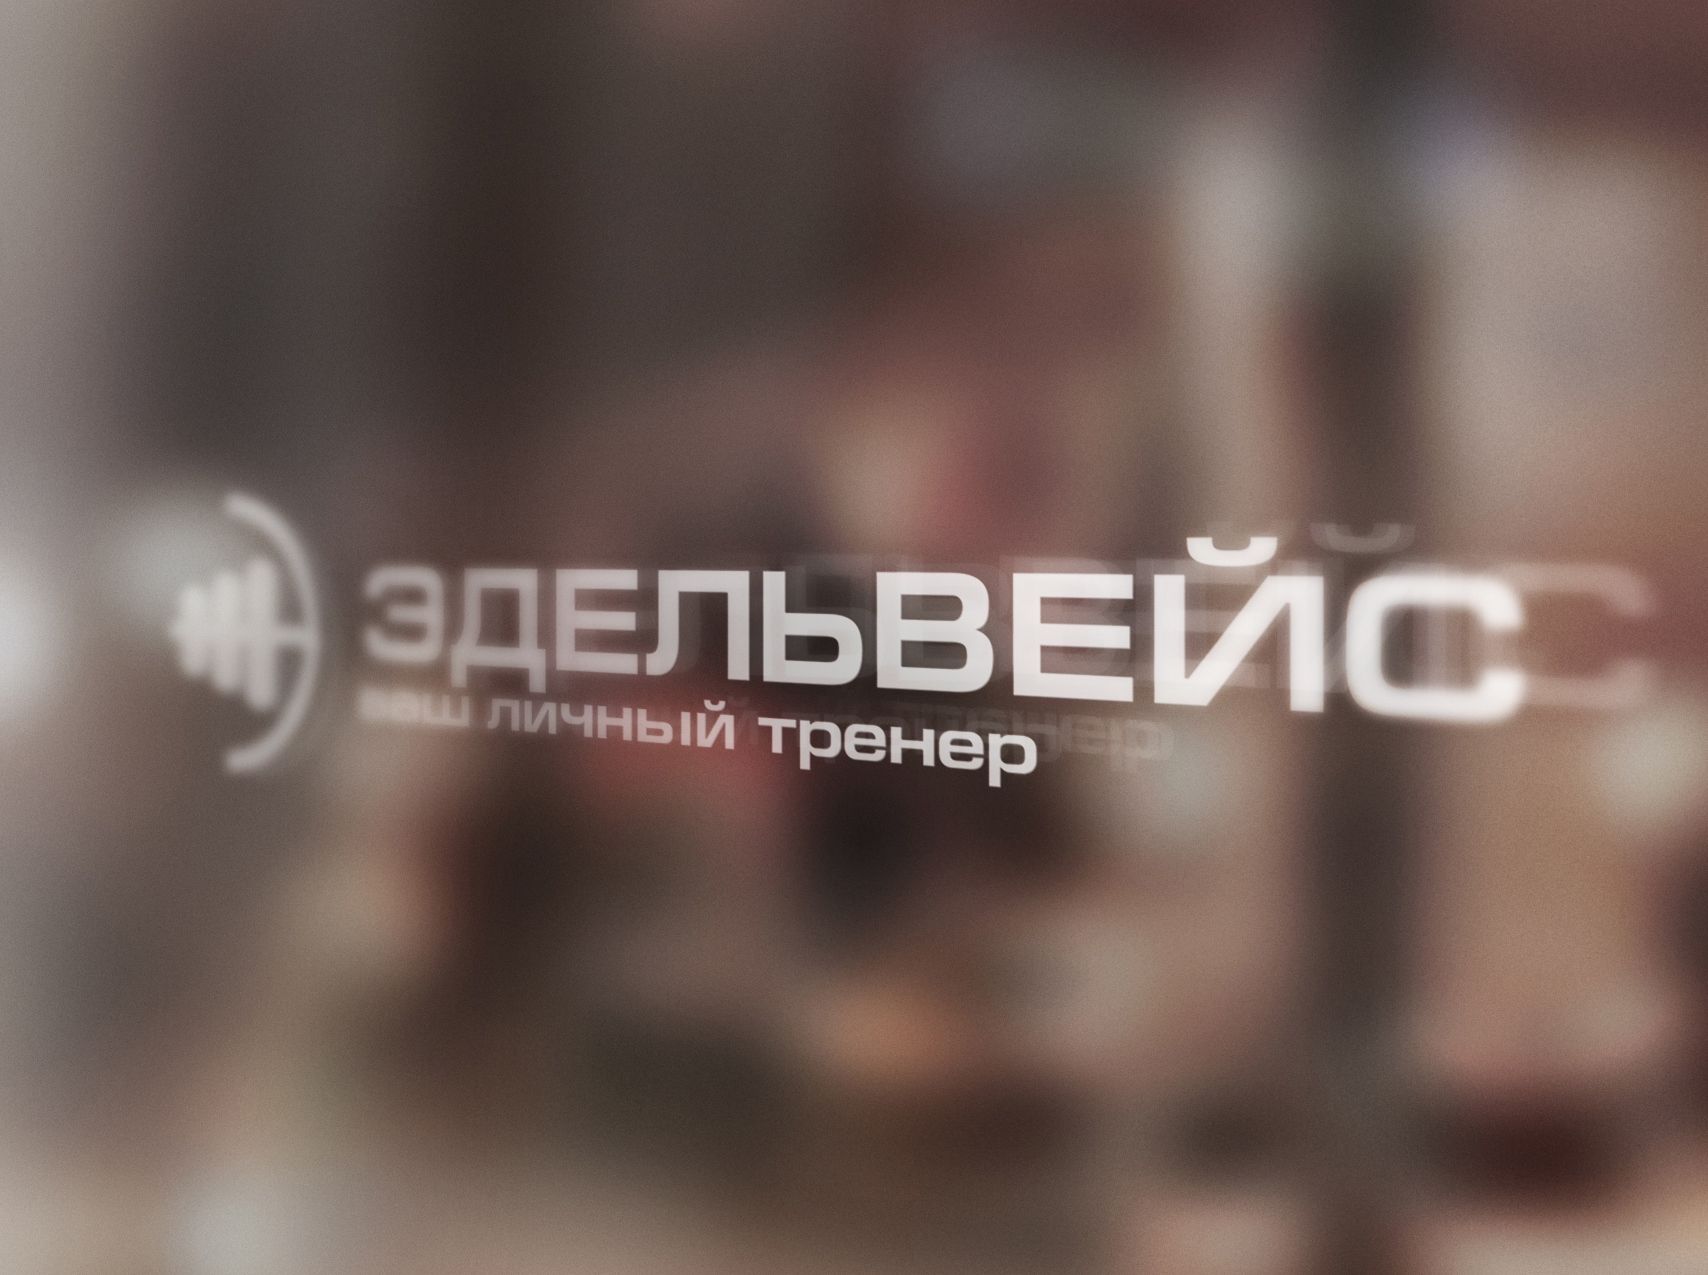 Логотип и название для спортивного зала - дизайнер PavelFedotOvsky